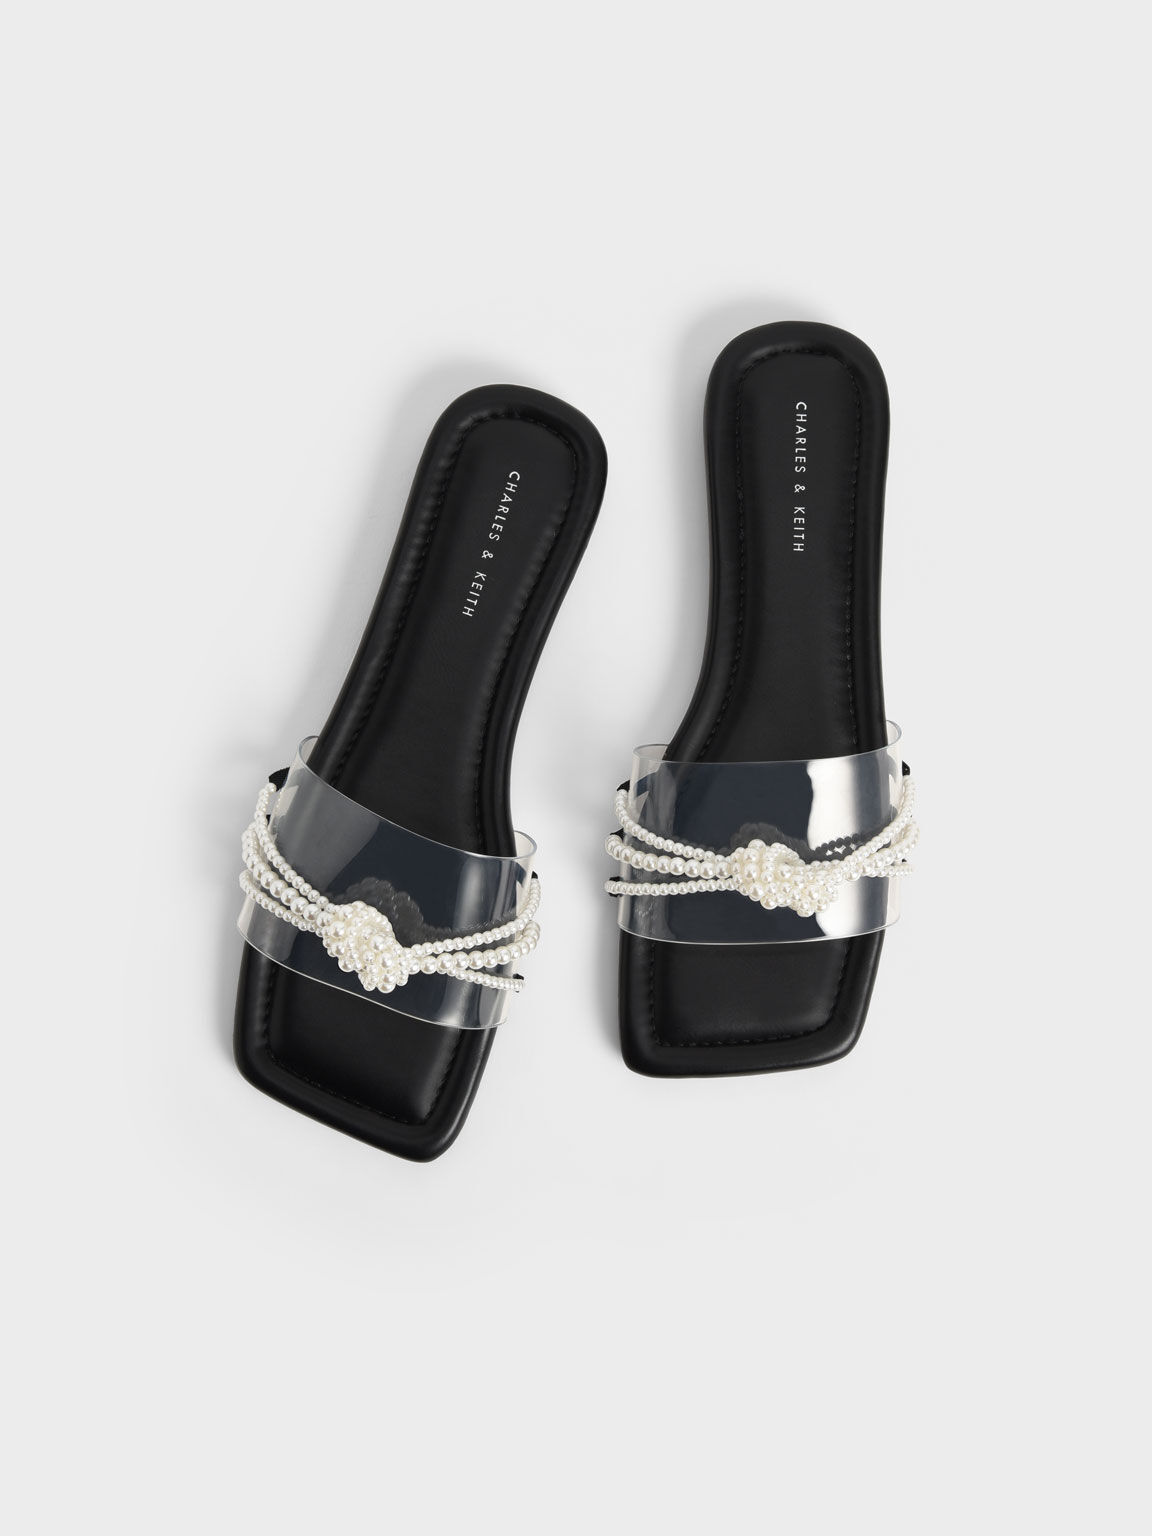 Sandal Slide Bead Embellished, Black, hi-res